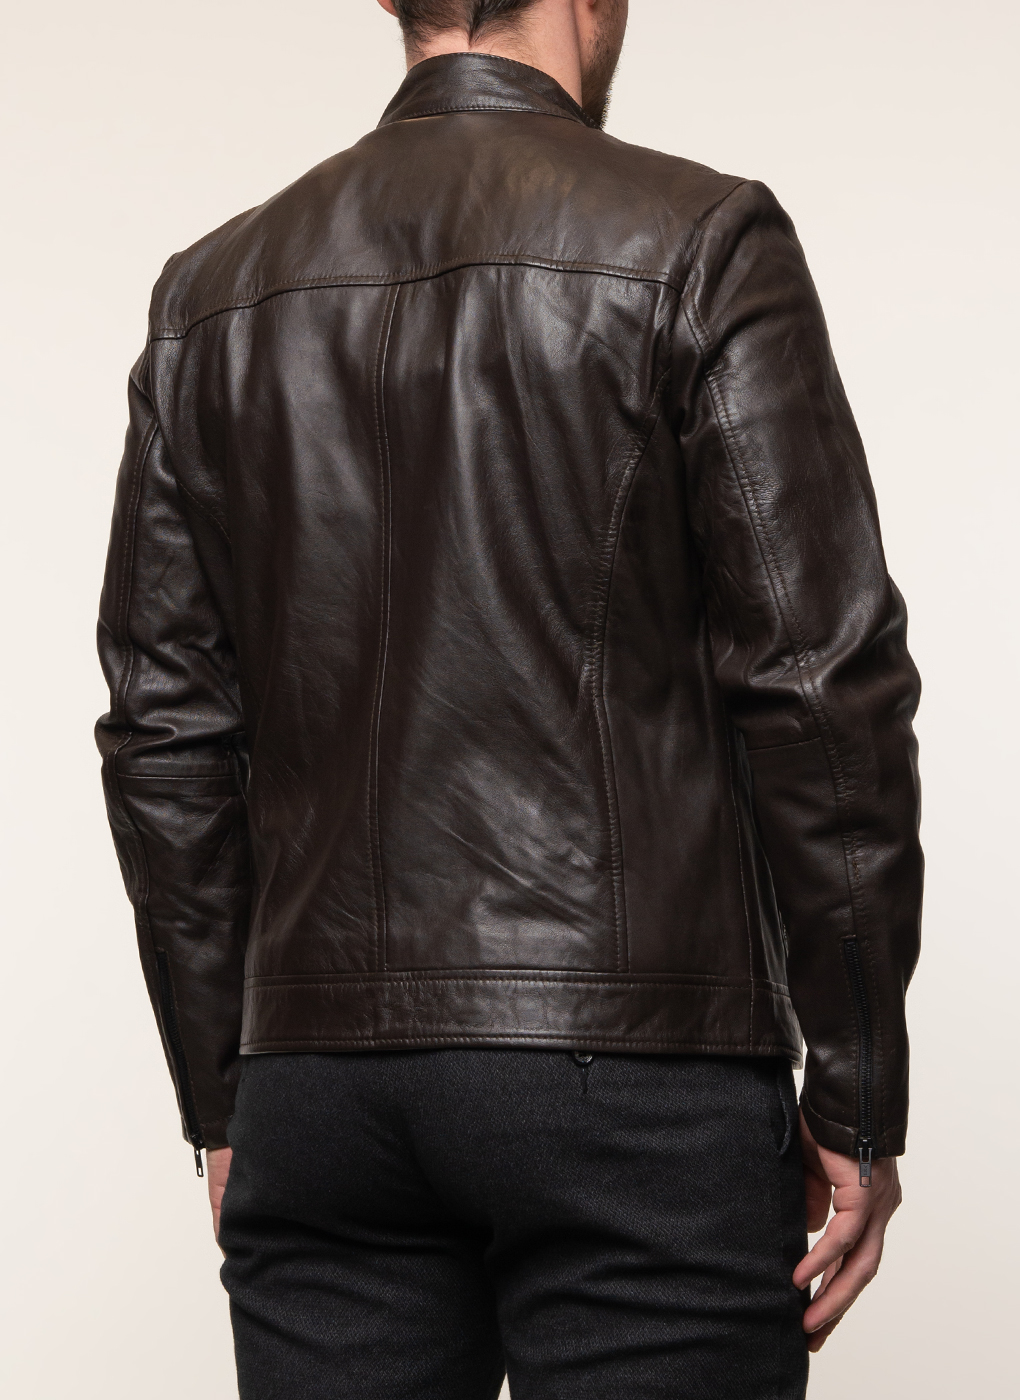 Кожаная куртка мужская Каляев 1579984 коричневая 58 RU